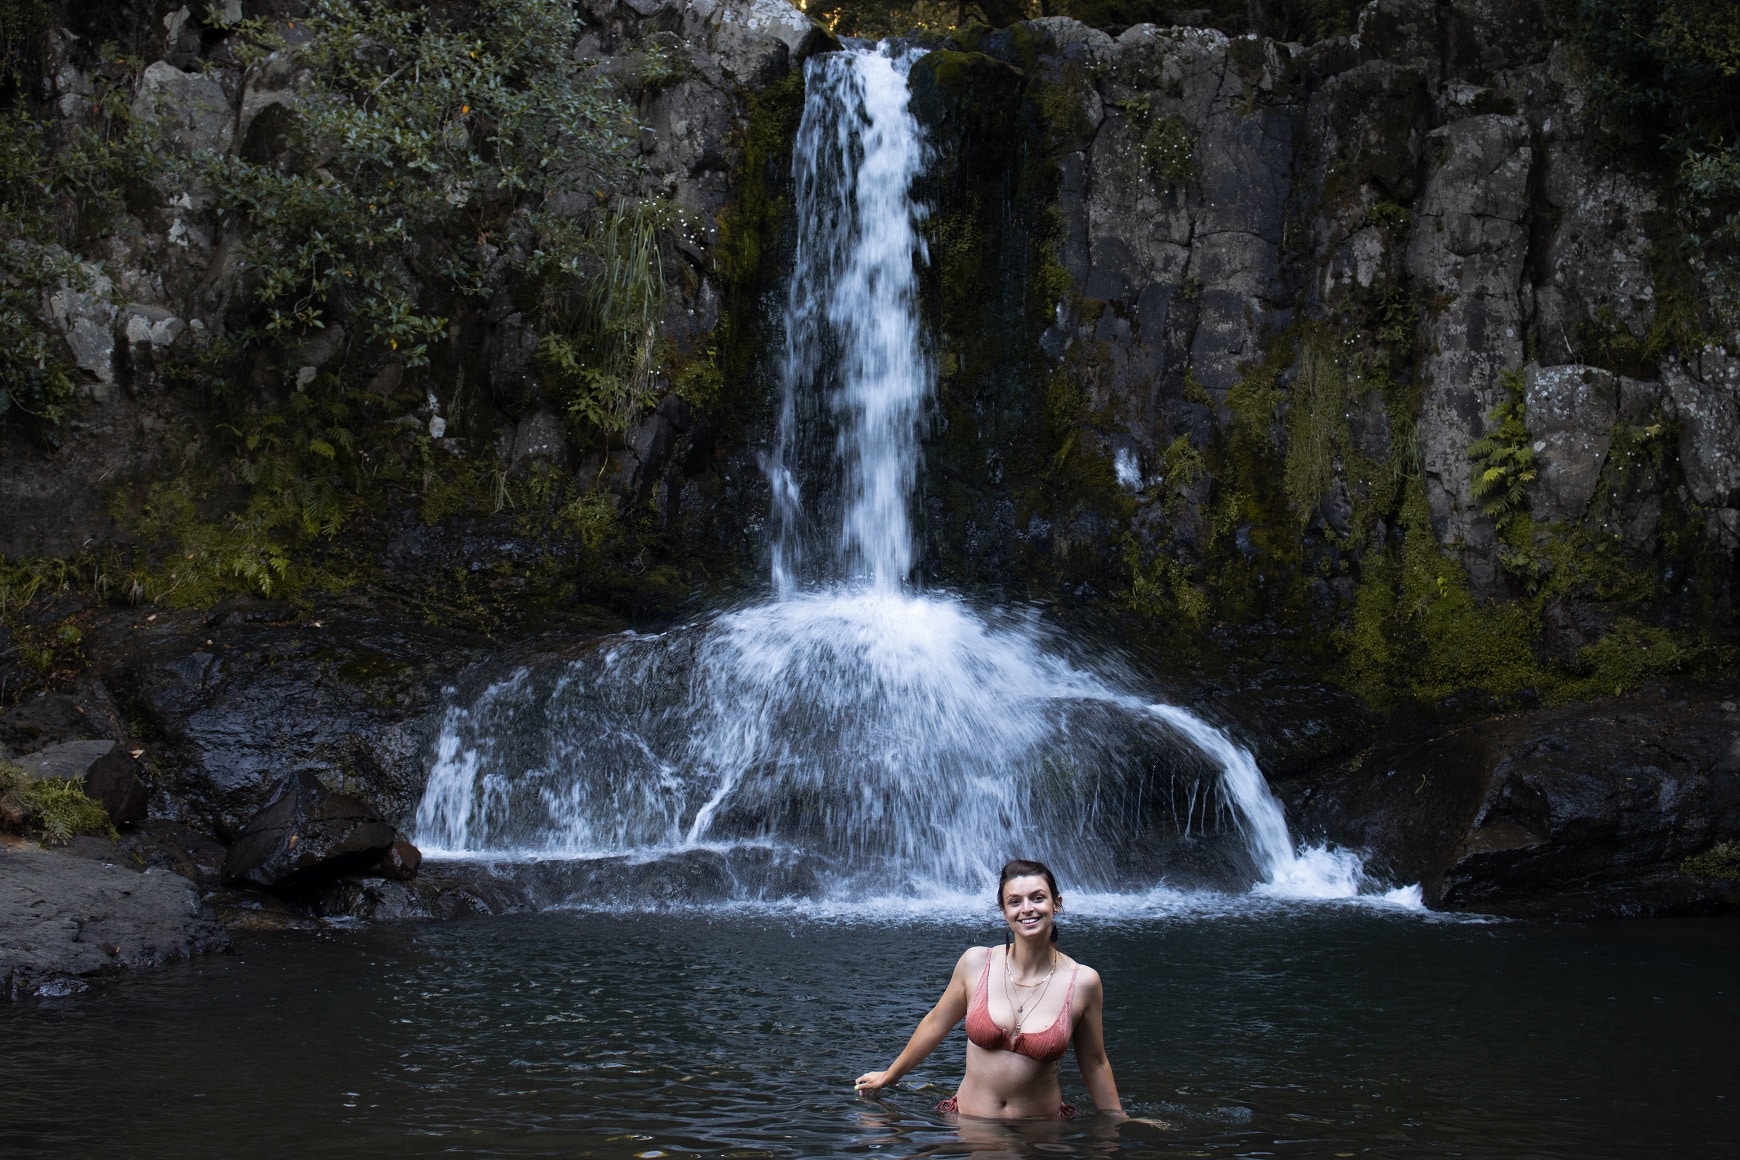 Swimming at Waiau Falls